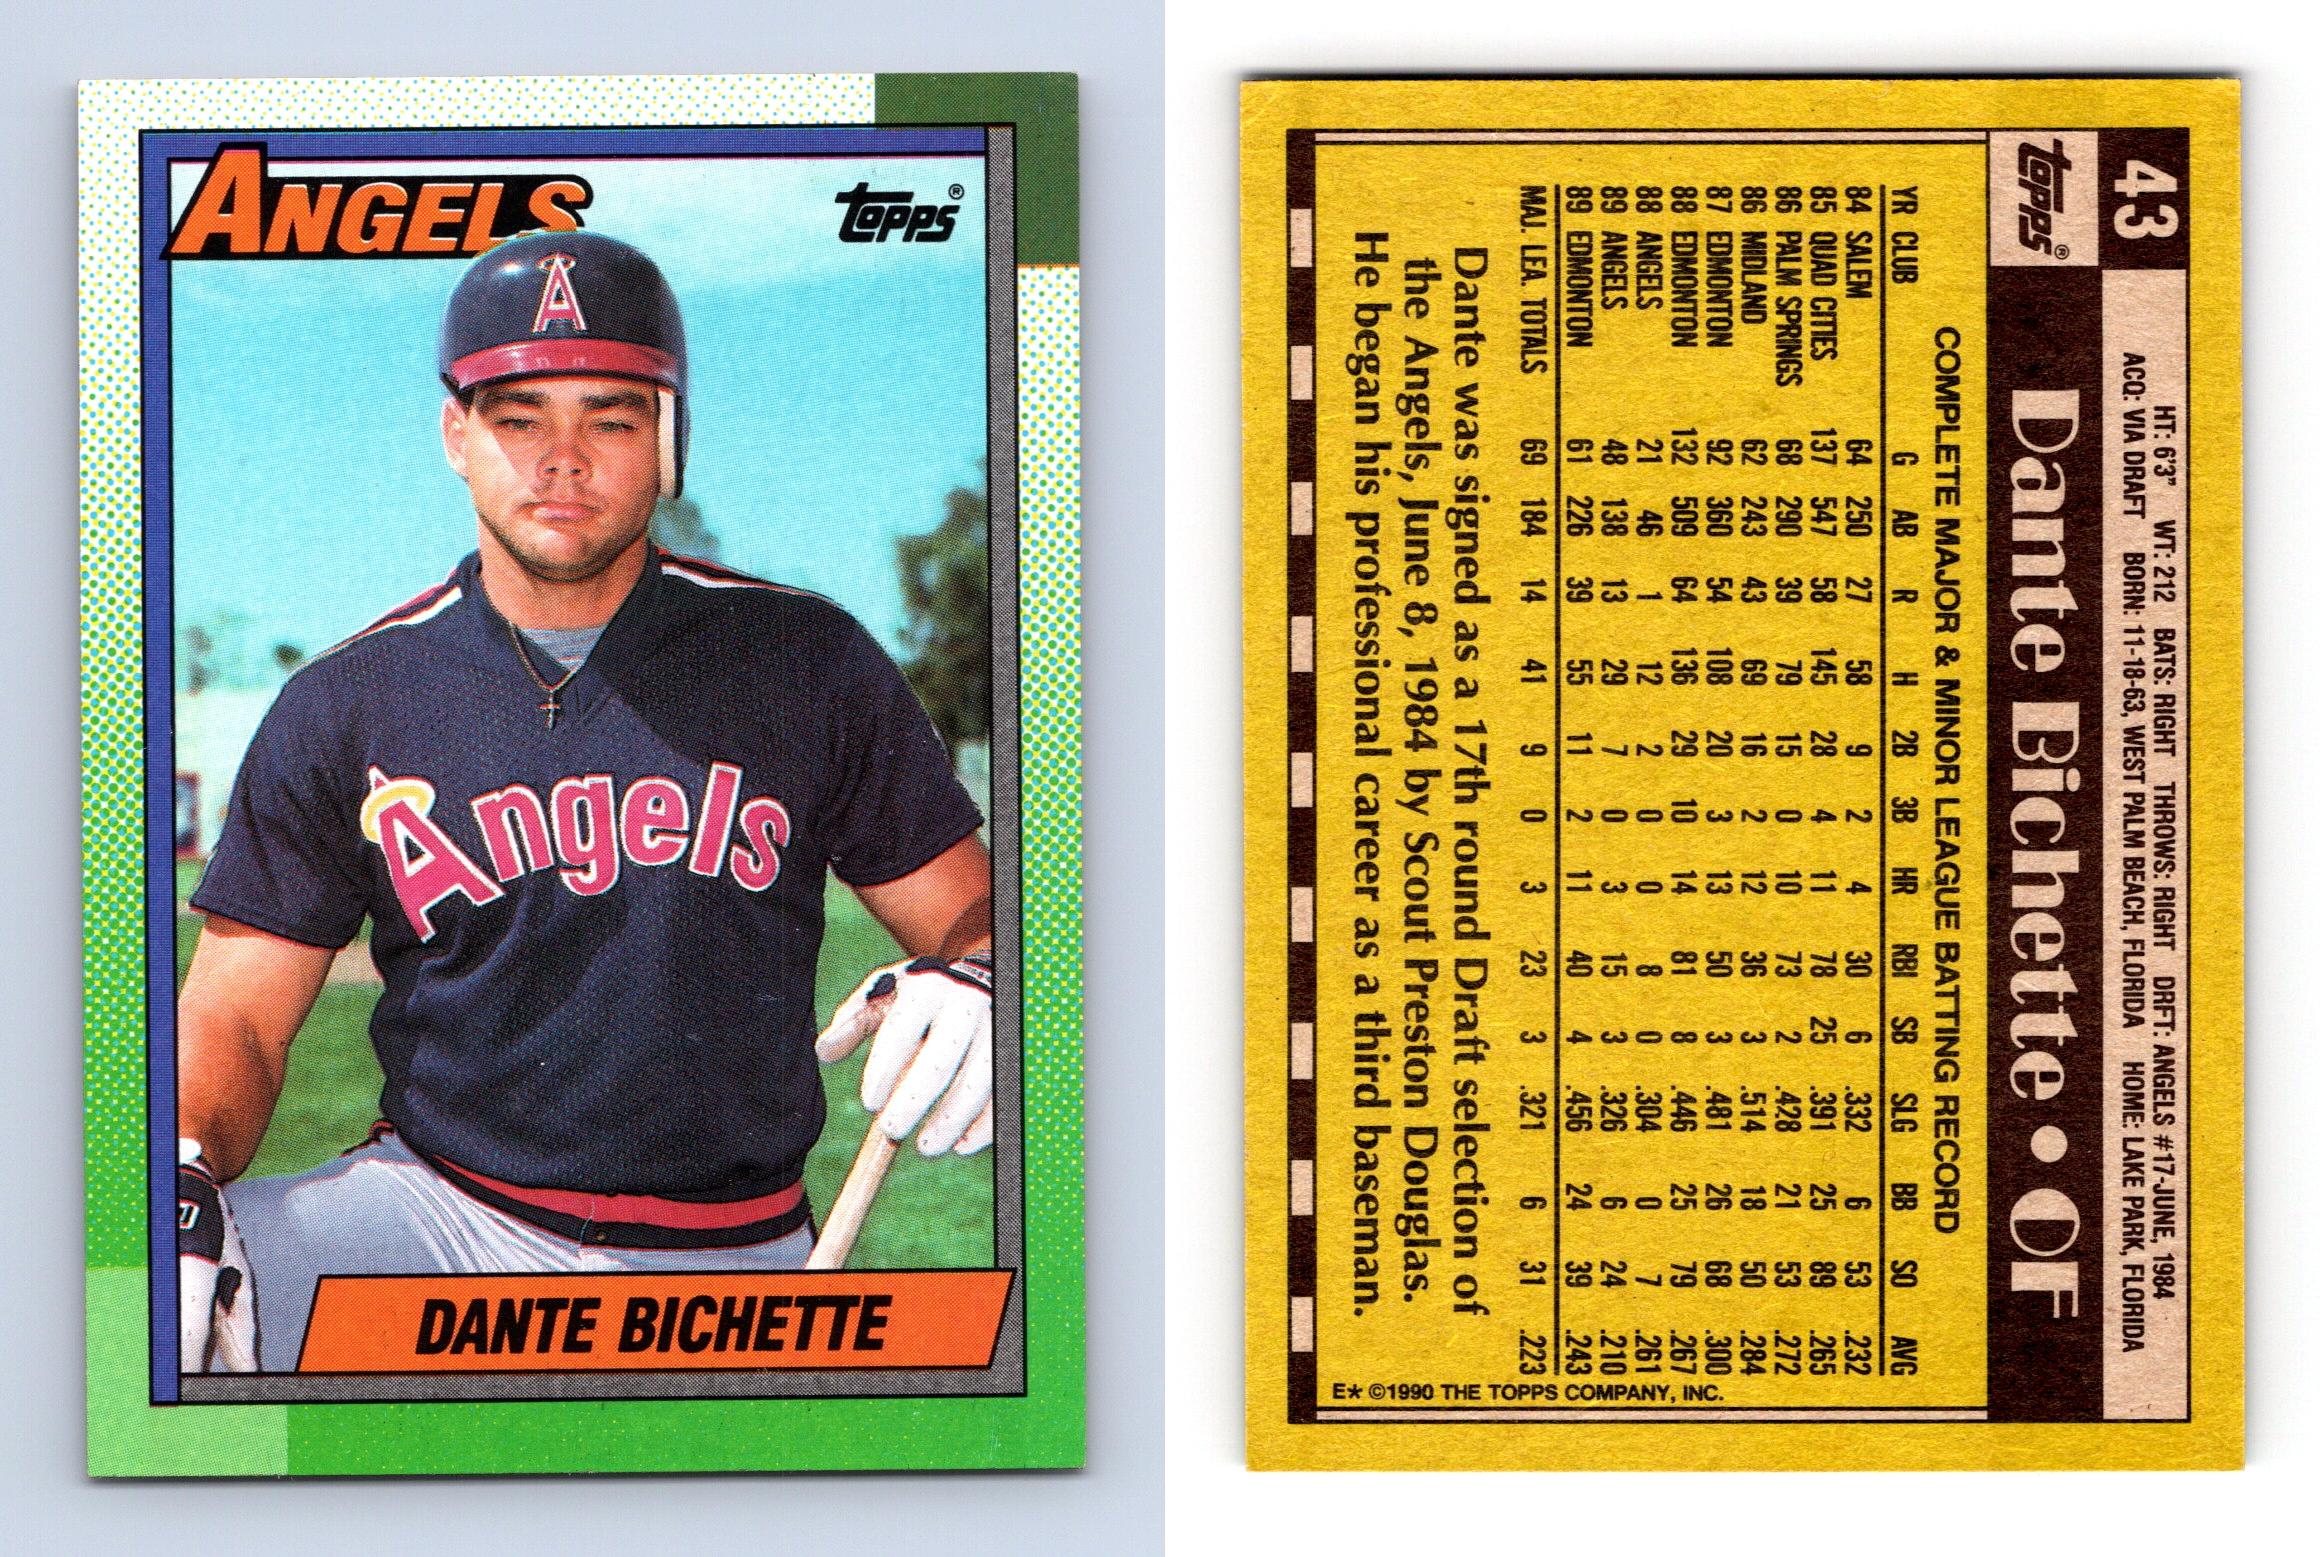 Dante Bichette - Angels #43 Topps 1990 Baseball Trading Card